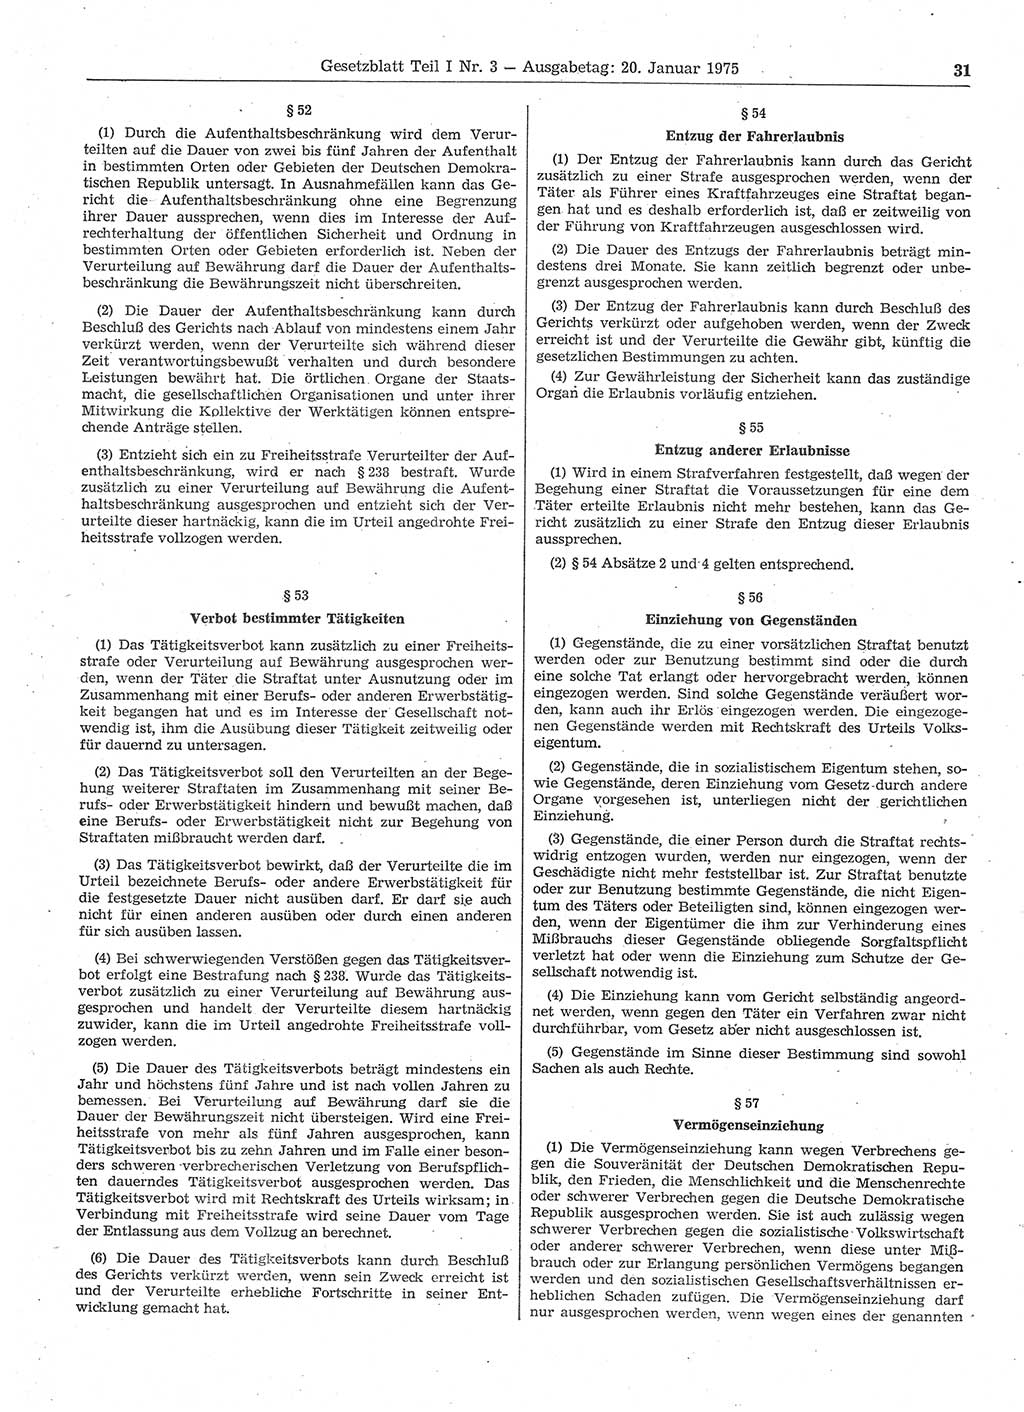 Gesetzblatt (GBl.) der Deutschen Demokratischen Republik (DDR) Teil Ⅰ 1975, Seite 31 (GBl. DDR Ⅰ 1975, S. 31)